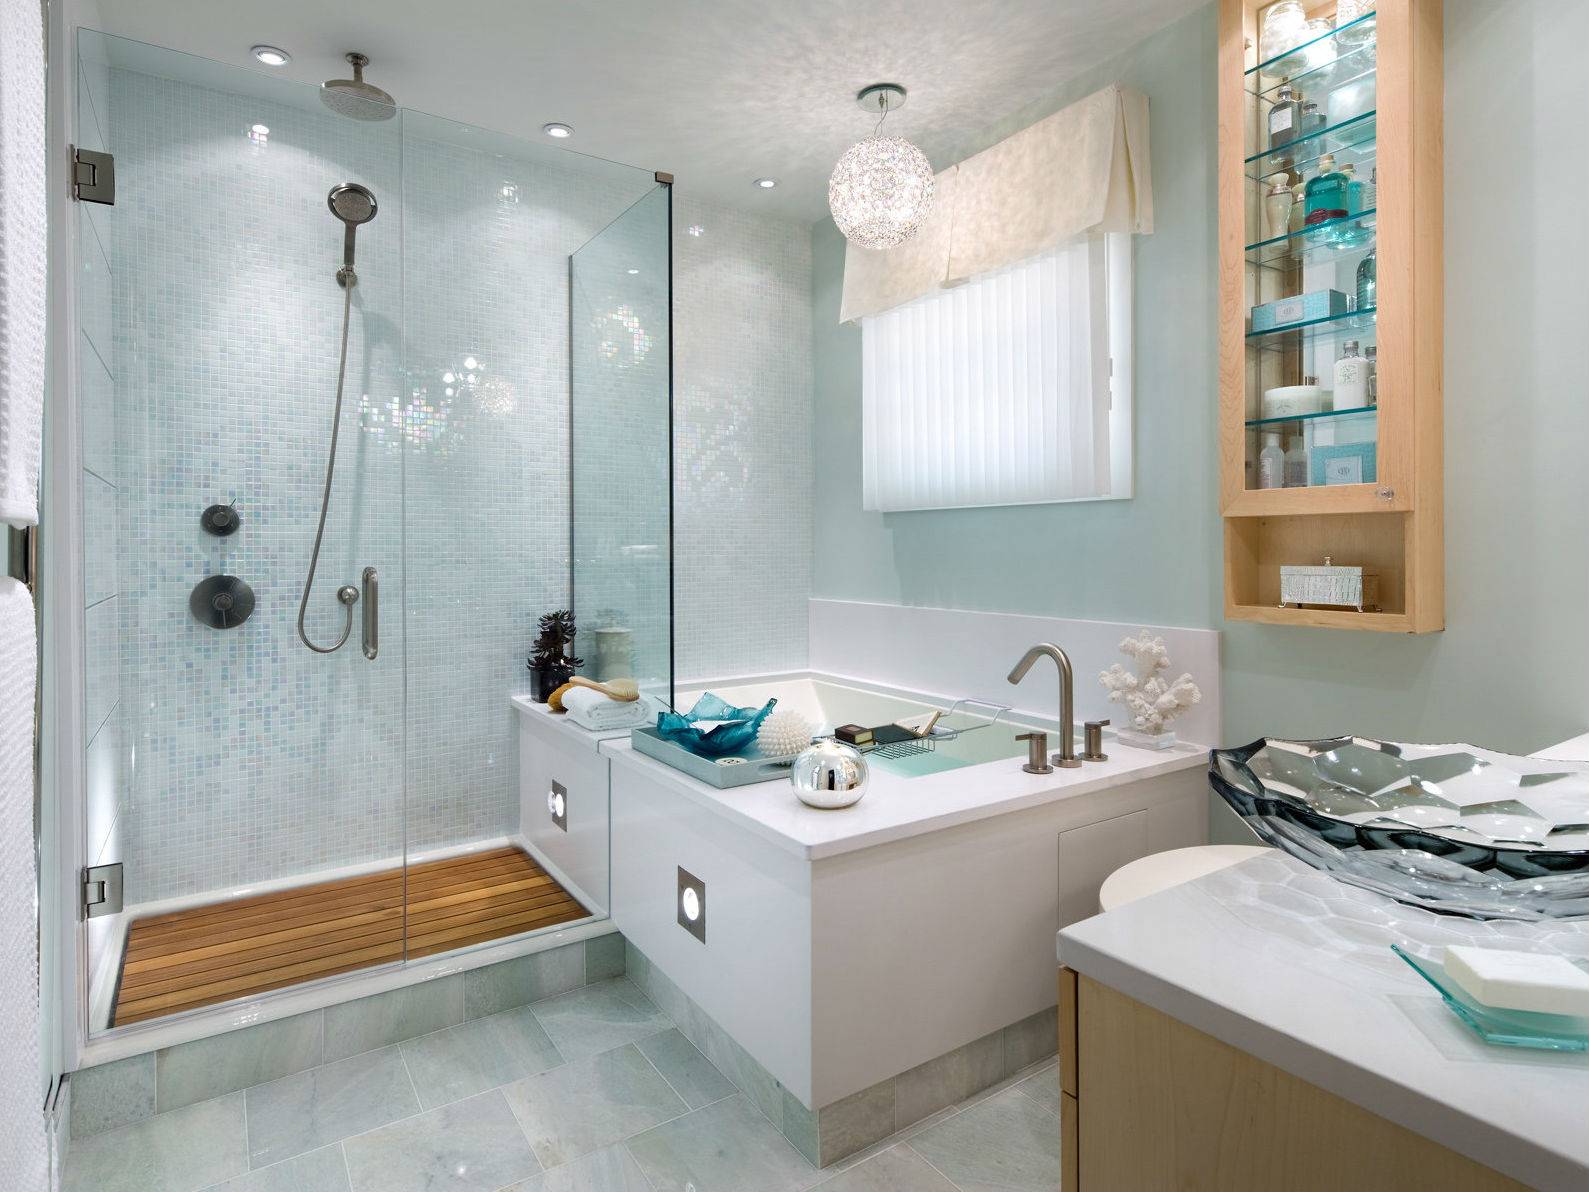 Проект ванной комнаты (64 фото): проектирование санузлов площадью 4 кв. м для частного дома, лучшие готовые решения для маленького помещения